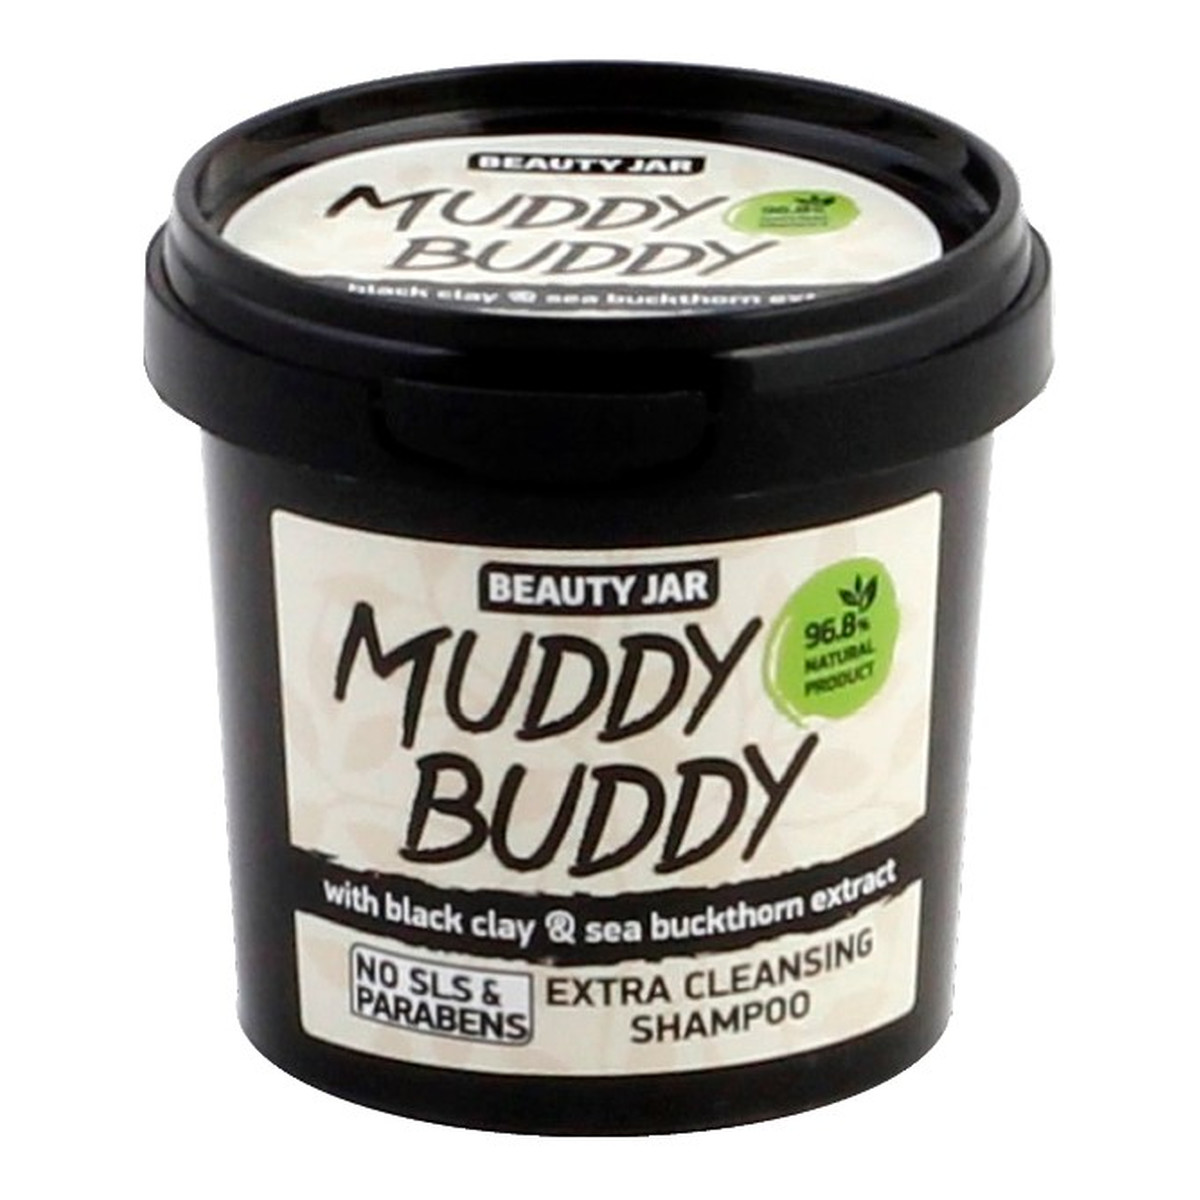 Beauty Jar Muddy buddy Szampon do włosów głęboko oczyszczający 150g